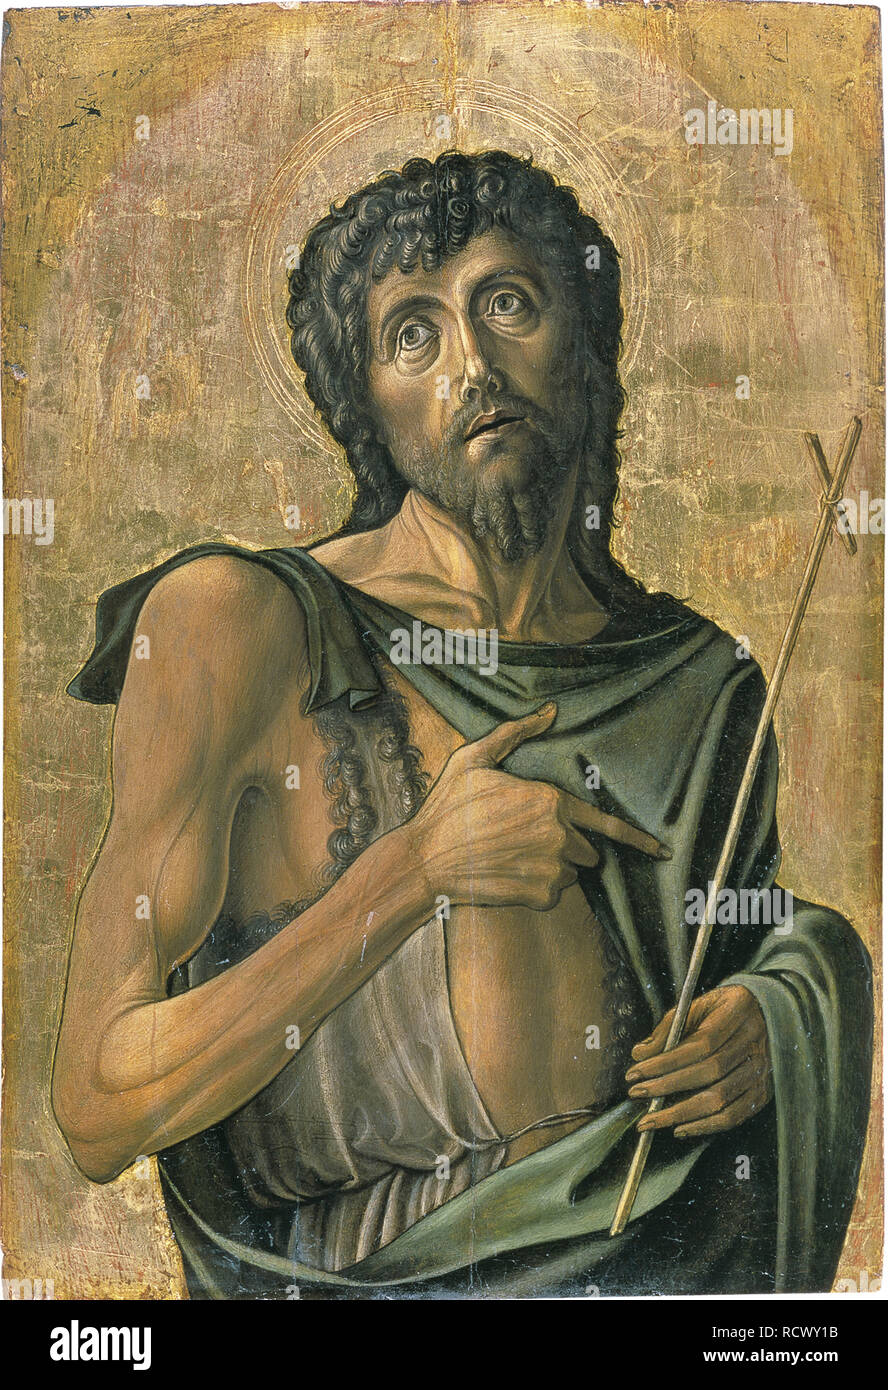 Saint John the Baptist. Museum: Thyssen-Bornemisza Collections. Author: VIVARINI, ALVISE. Stock Photo